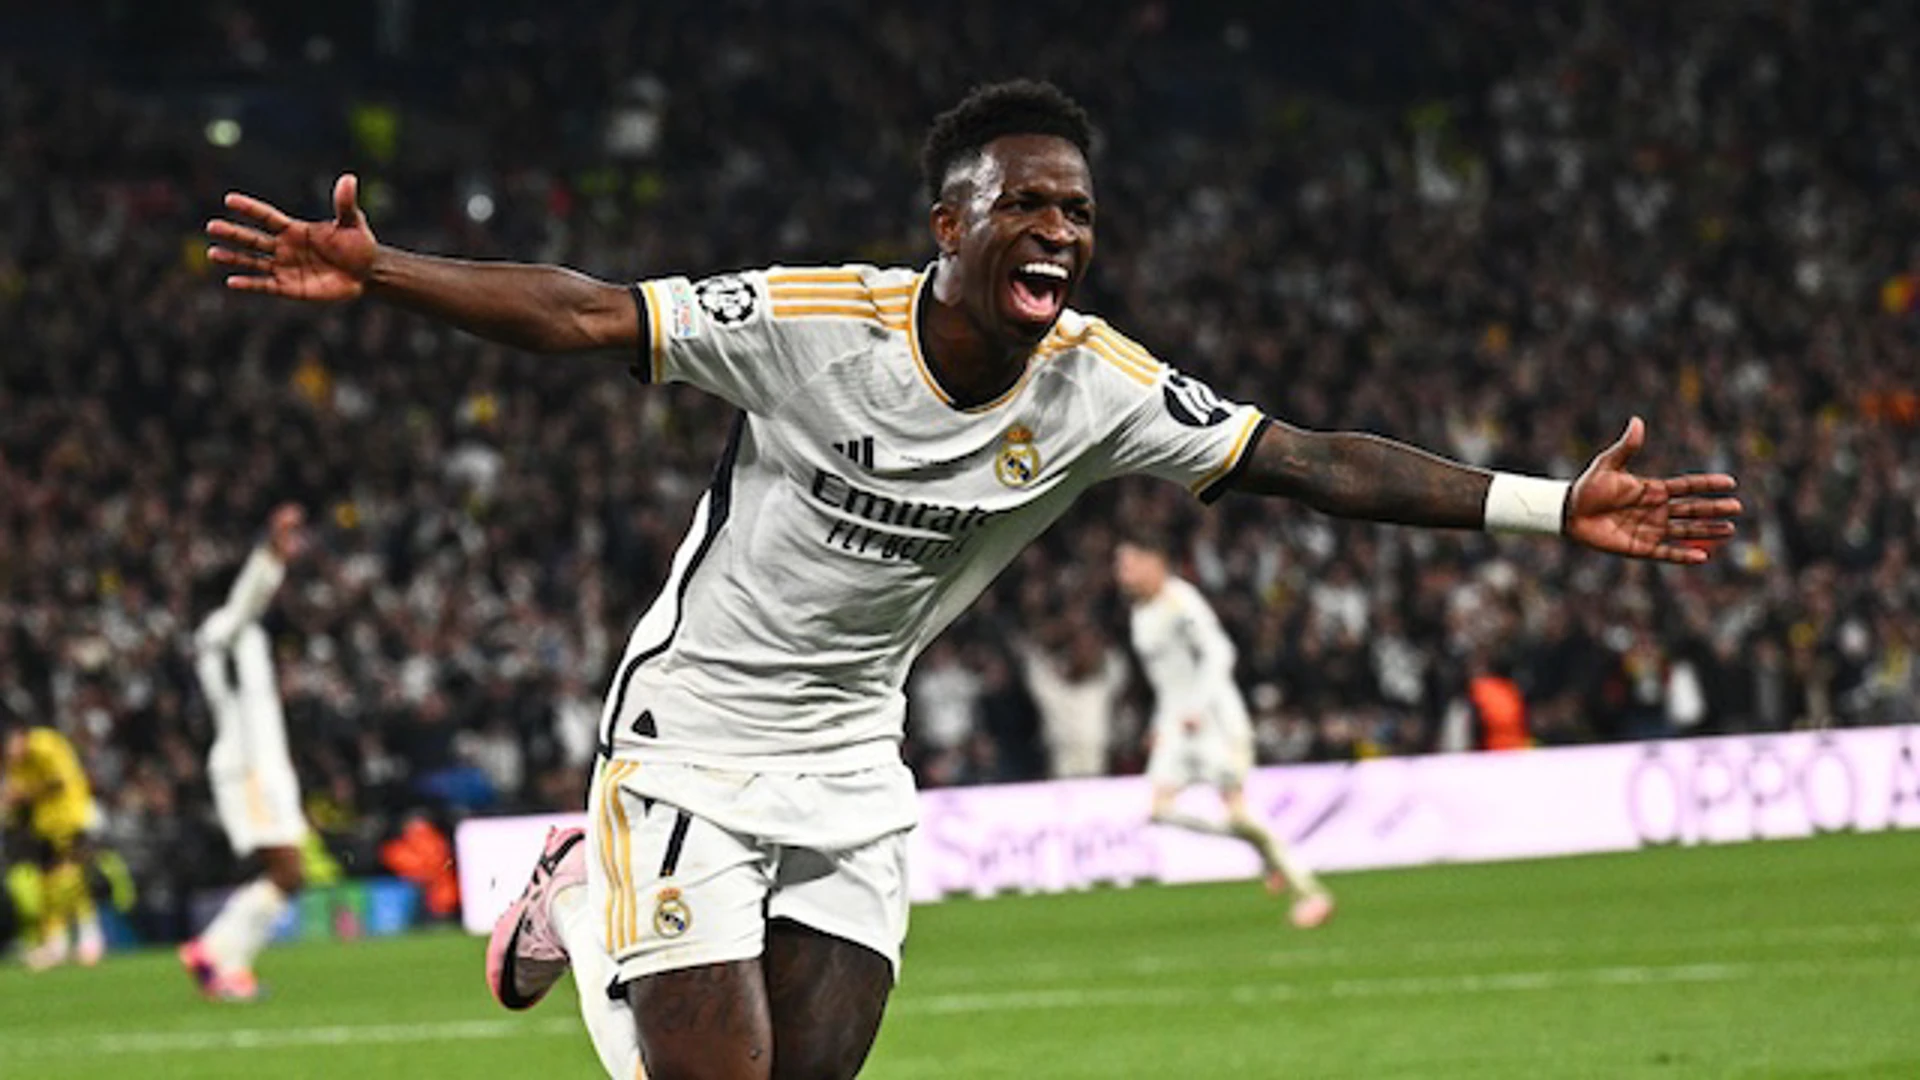 Vinícius Júnior 83rd Minute Goal | Dortmund v Real Madrid | UEFA Champions League Final